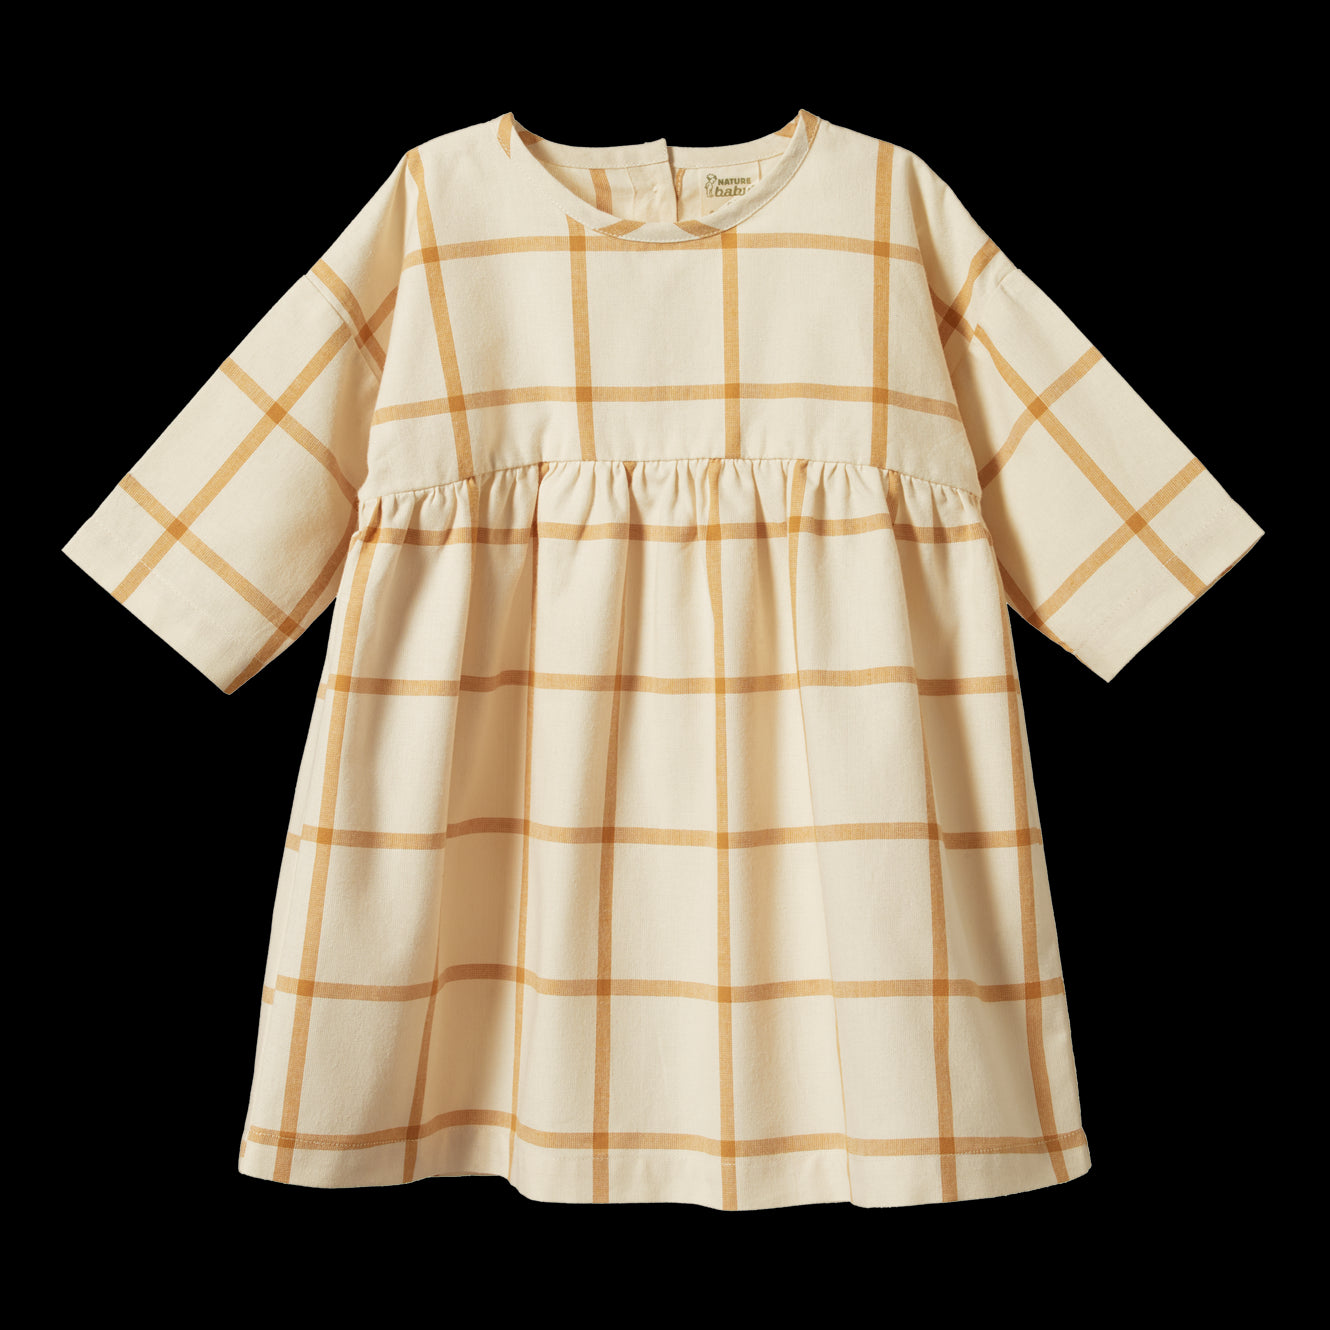 Nature Baby - Agatha Dress / Picnic Check